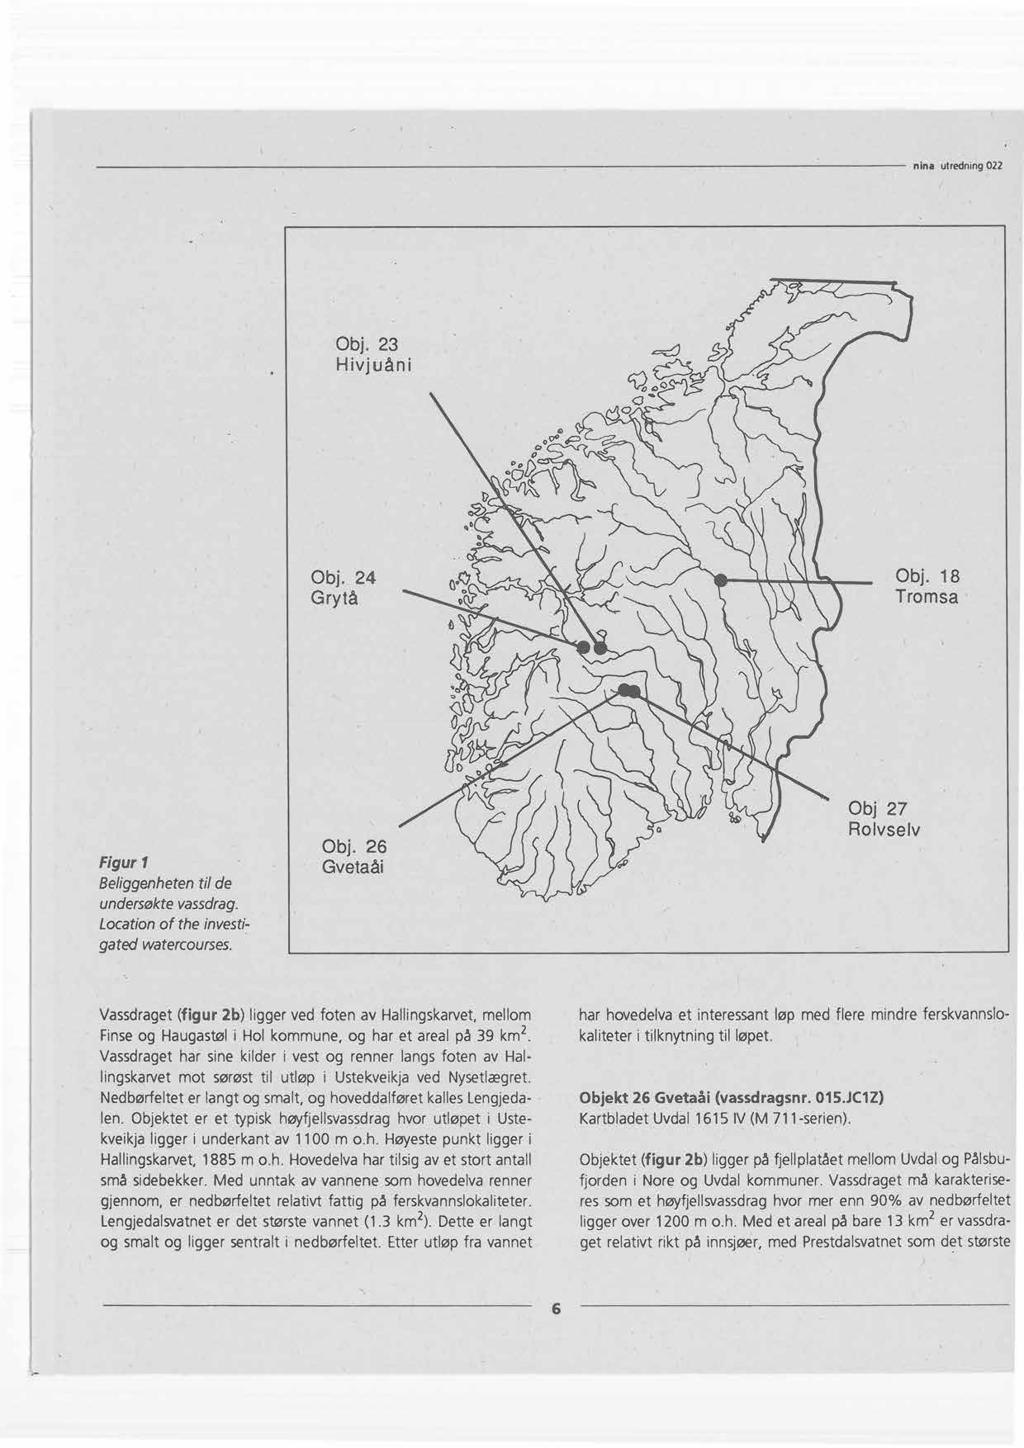 Obj. 23 Hivjuåni ø Obj. 24 Grytå Obj. 18 Tromsa Figur 1 Beliggenhetentil de undersøktevassdrag. Locationof the investigated watercourses. Obj. 26 Gvetaåi Obj 27 Rolvselv Vassdraget(figur 2b) ligger ved foten av Hallingskarvet,mellom Finseog Haugastøli Hol kommune, og har et areal på 39 km2.